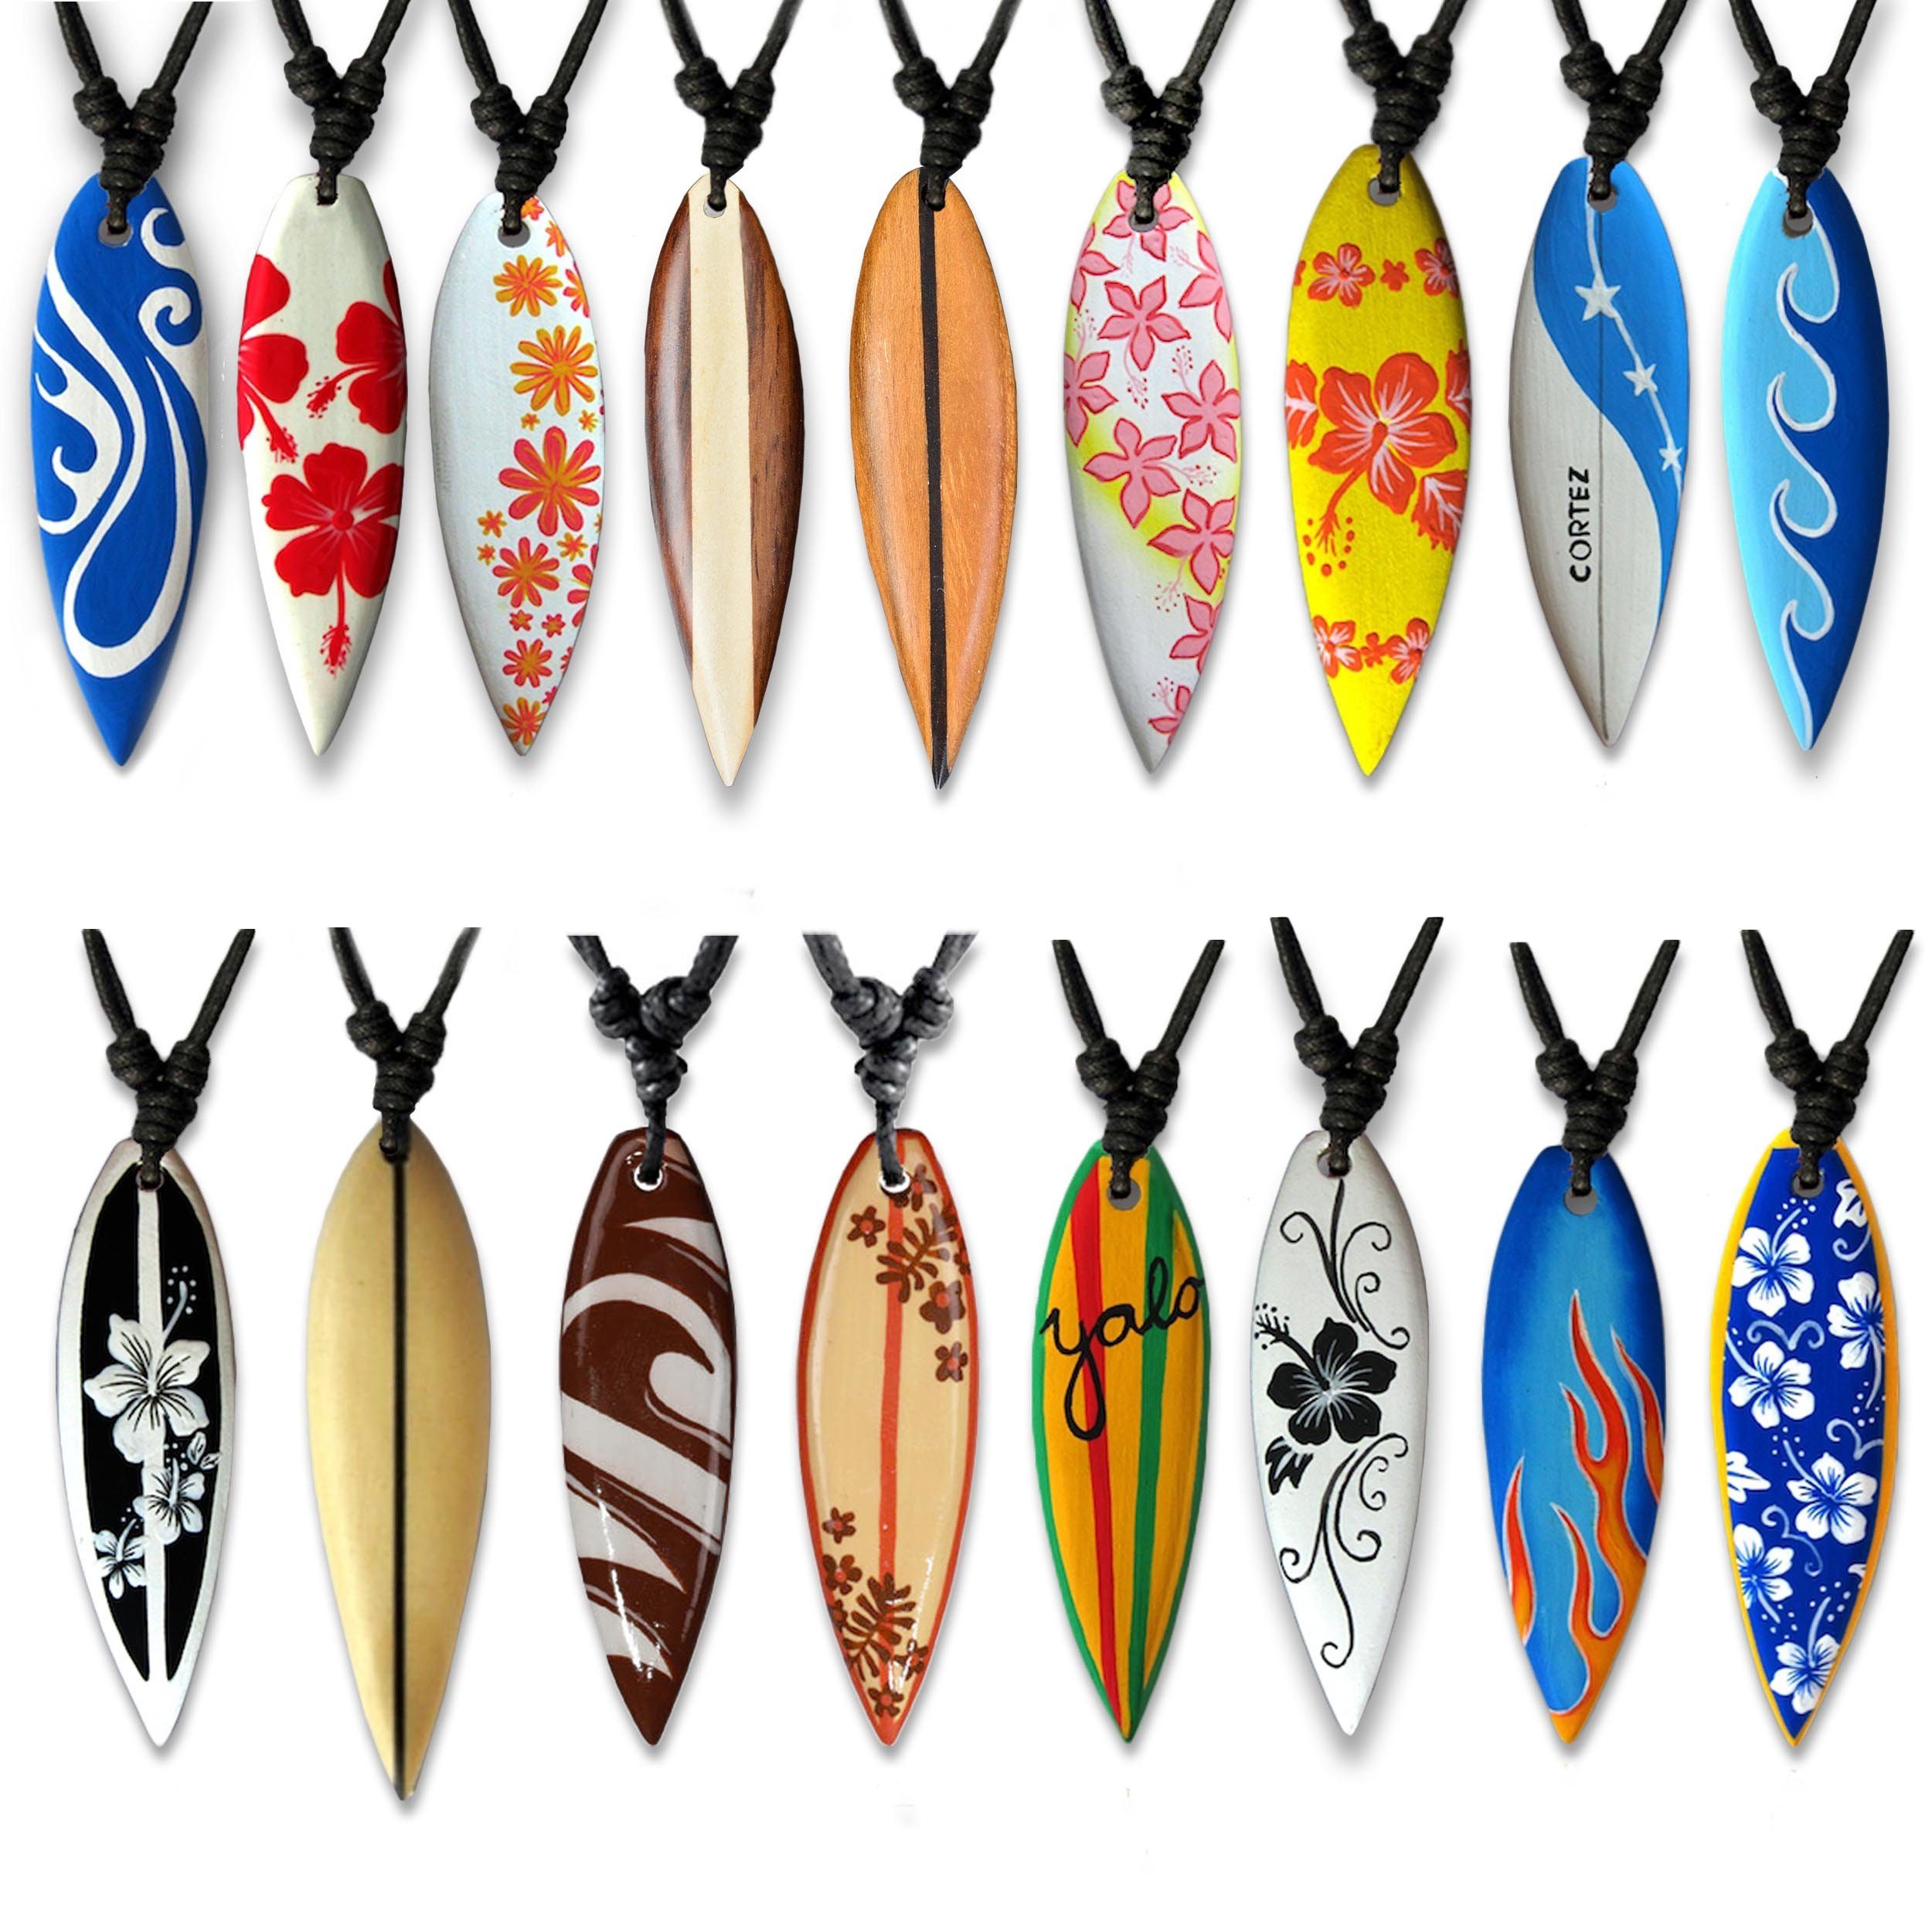 viva-adorno Kette Hawaii Anhänger Beige Hibiskus Holzkette mit Designs, Flammen Surfer Surferkette Yolo Blume verschiedene Halskette Holz Surfbrett Wellen